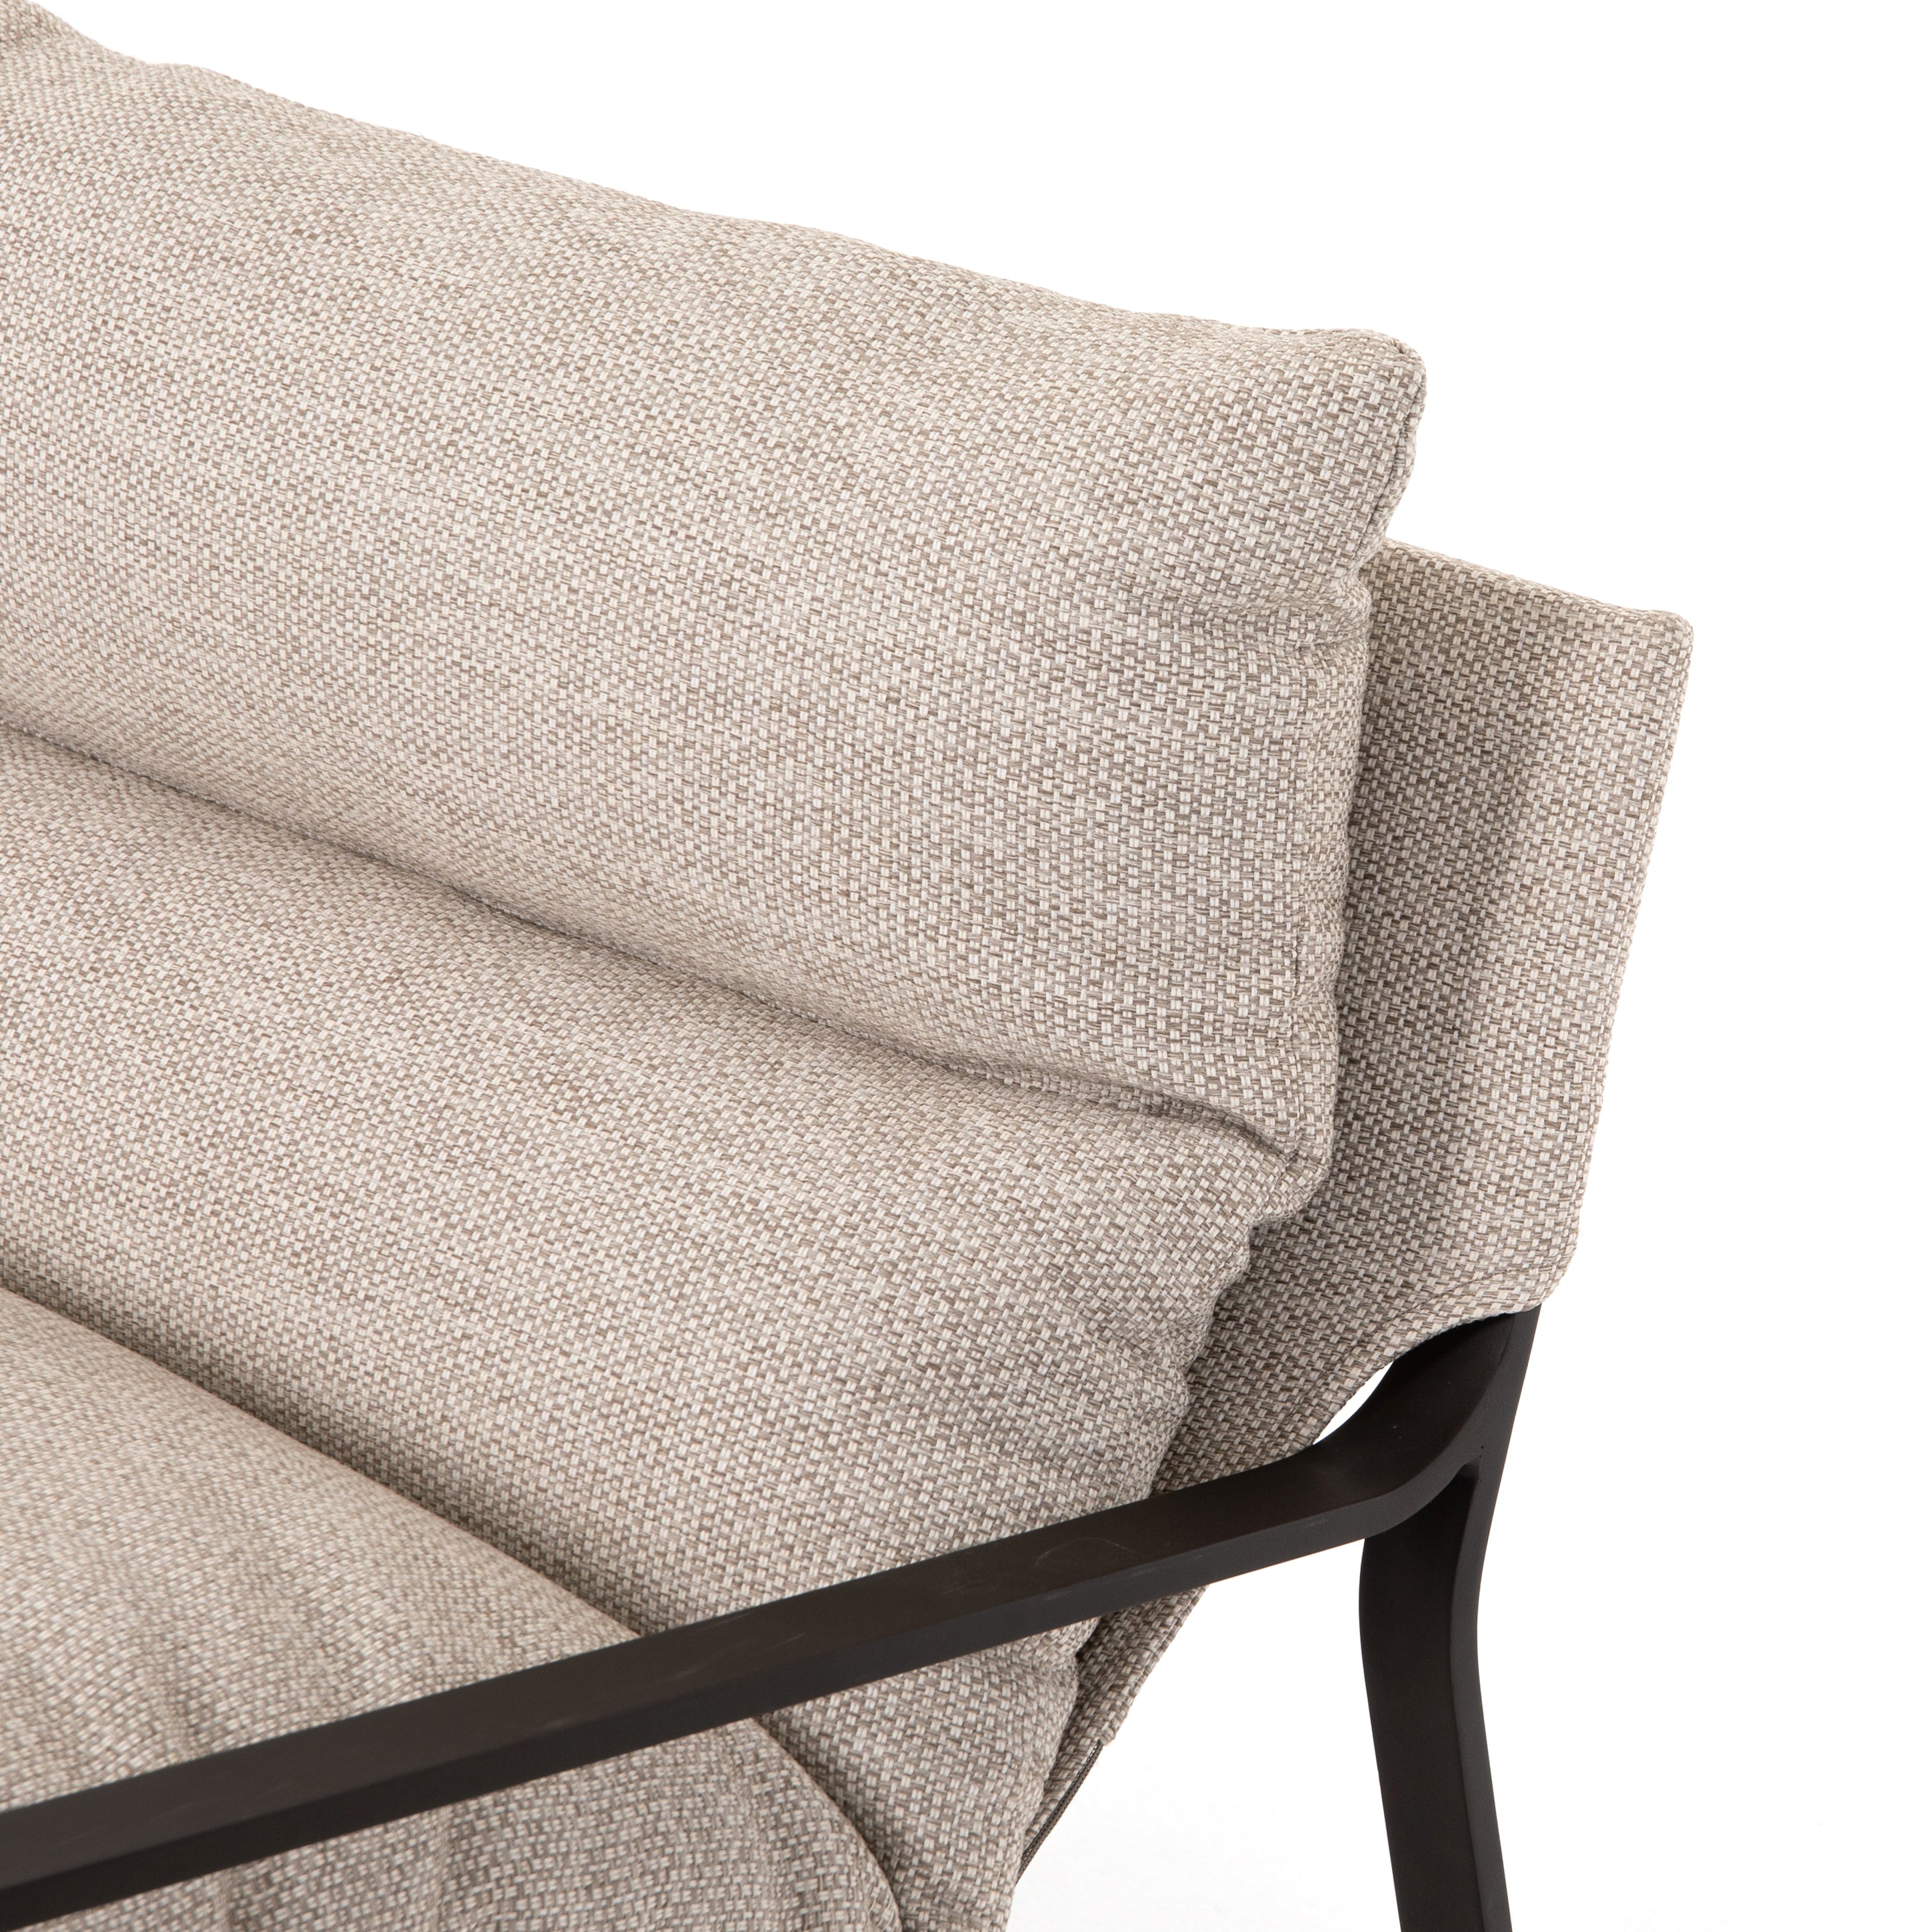 Avon Outdoor Sling Chair-Bronze/Sand - StyleMeGHD - 